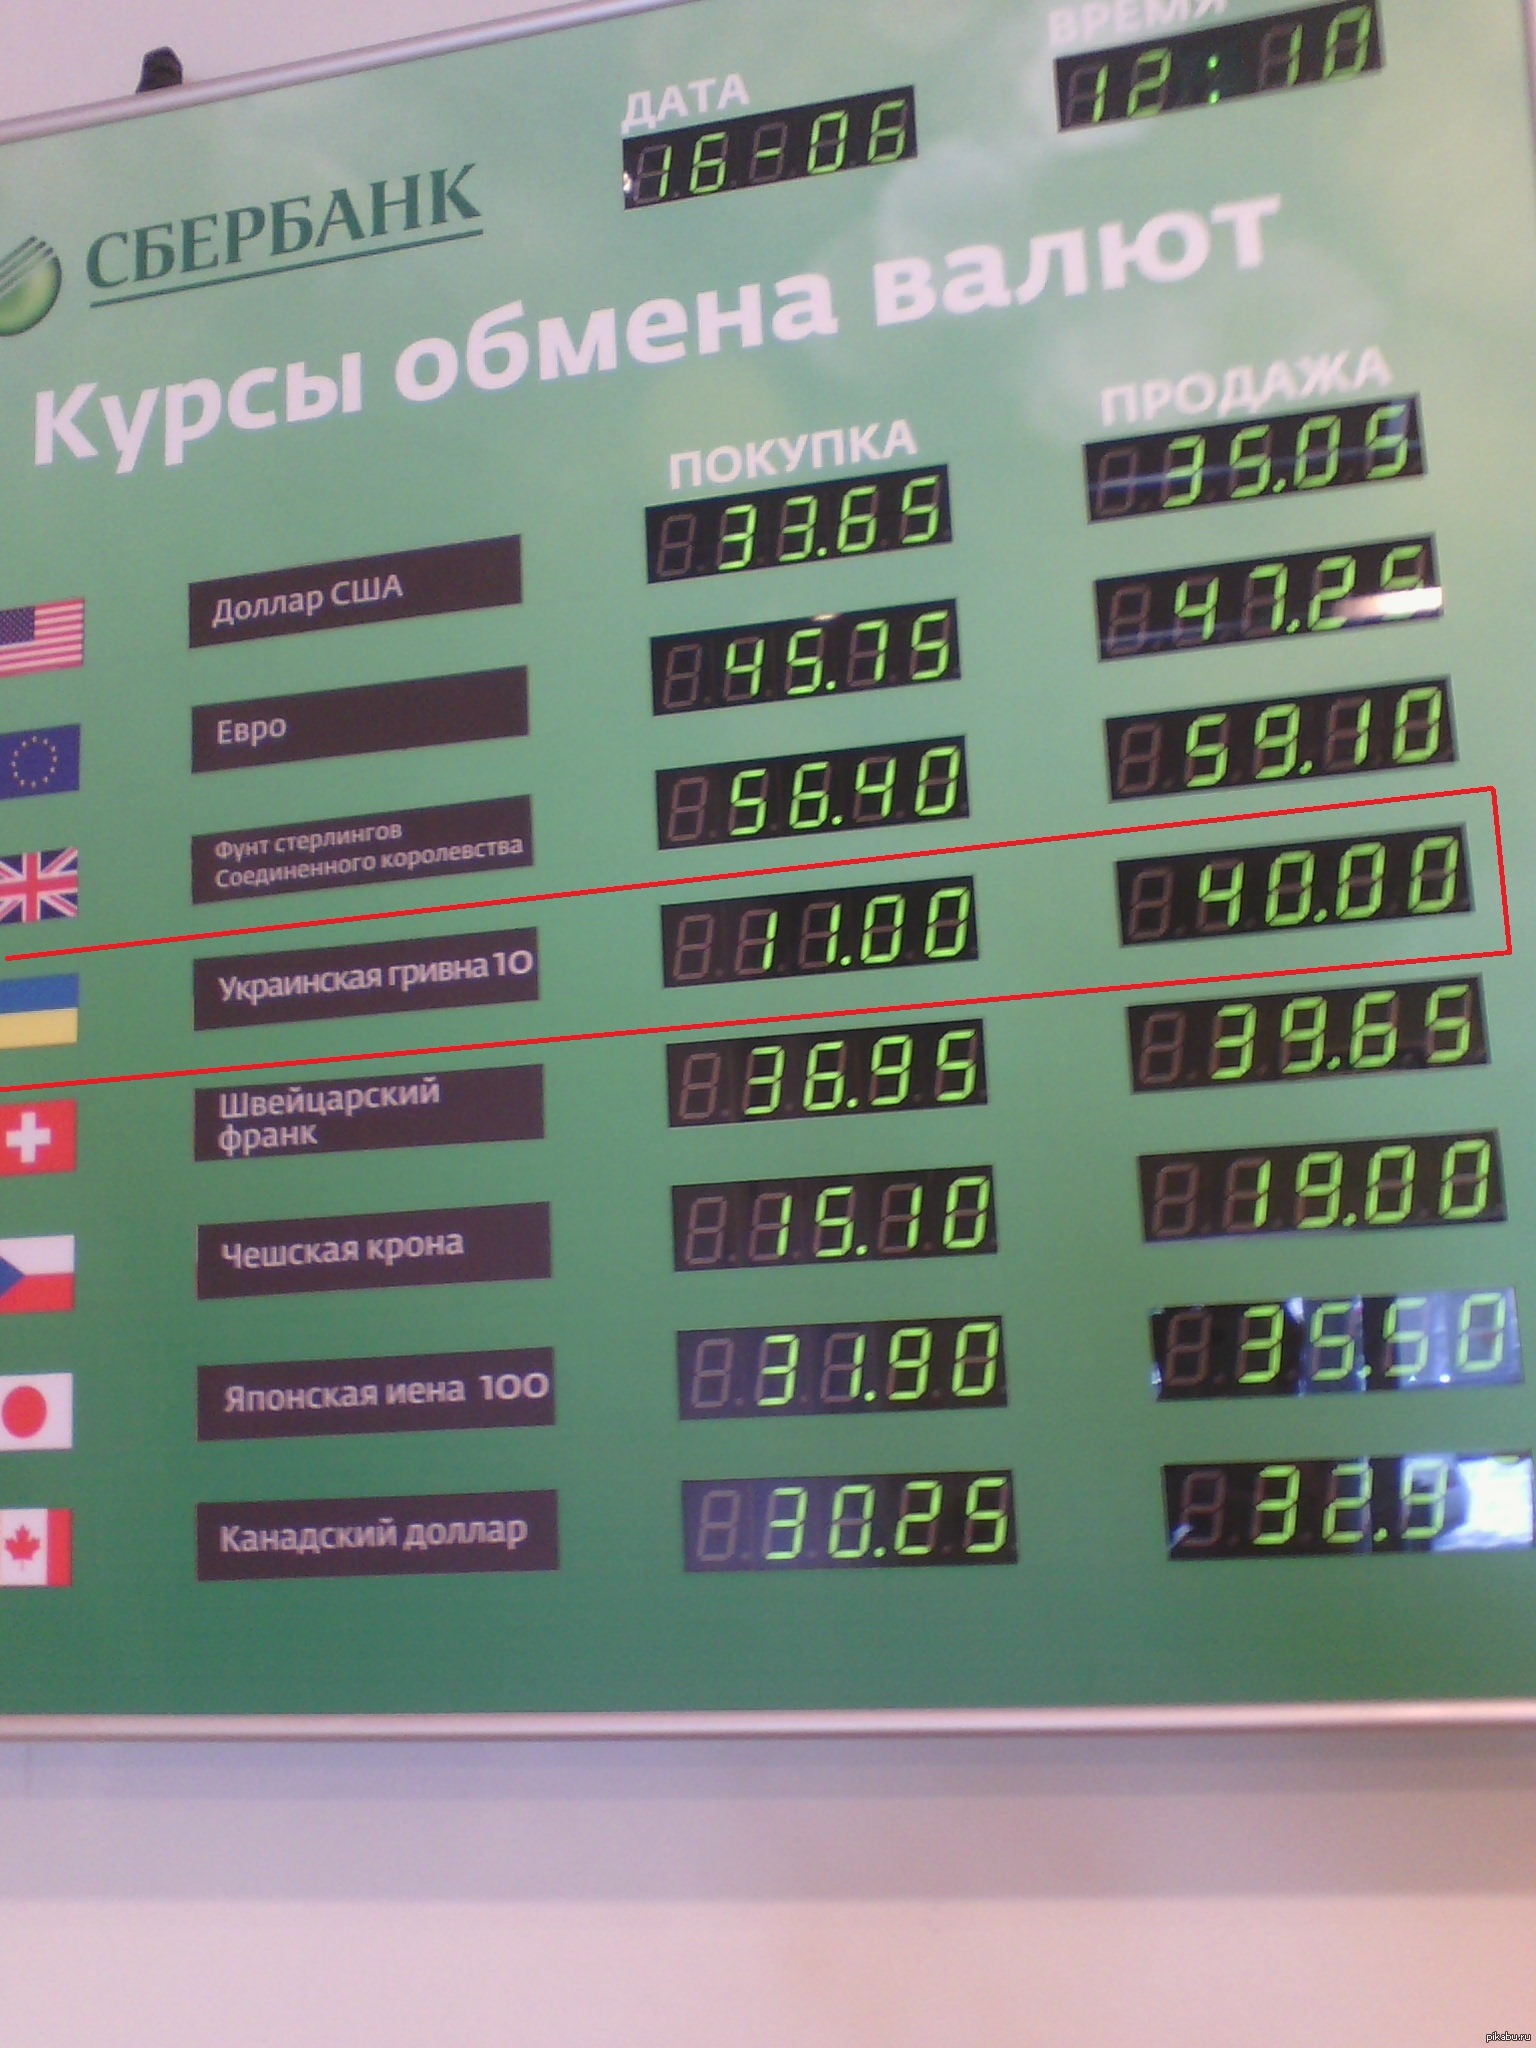 Сбербанк можно купить доллары наличными. Сбербанк в Украине с гривнами. Запрещенные гривны в России.